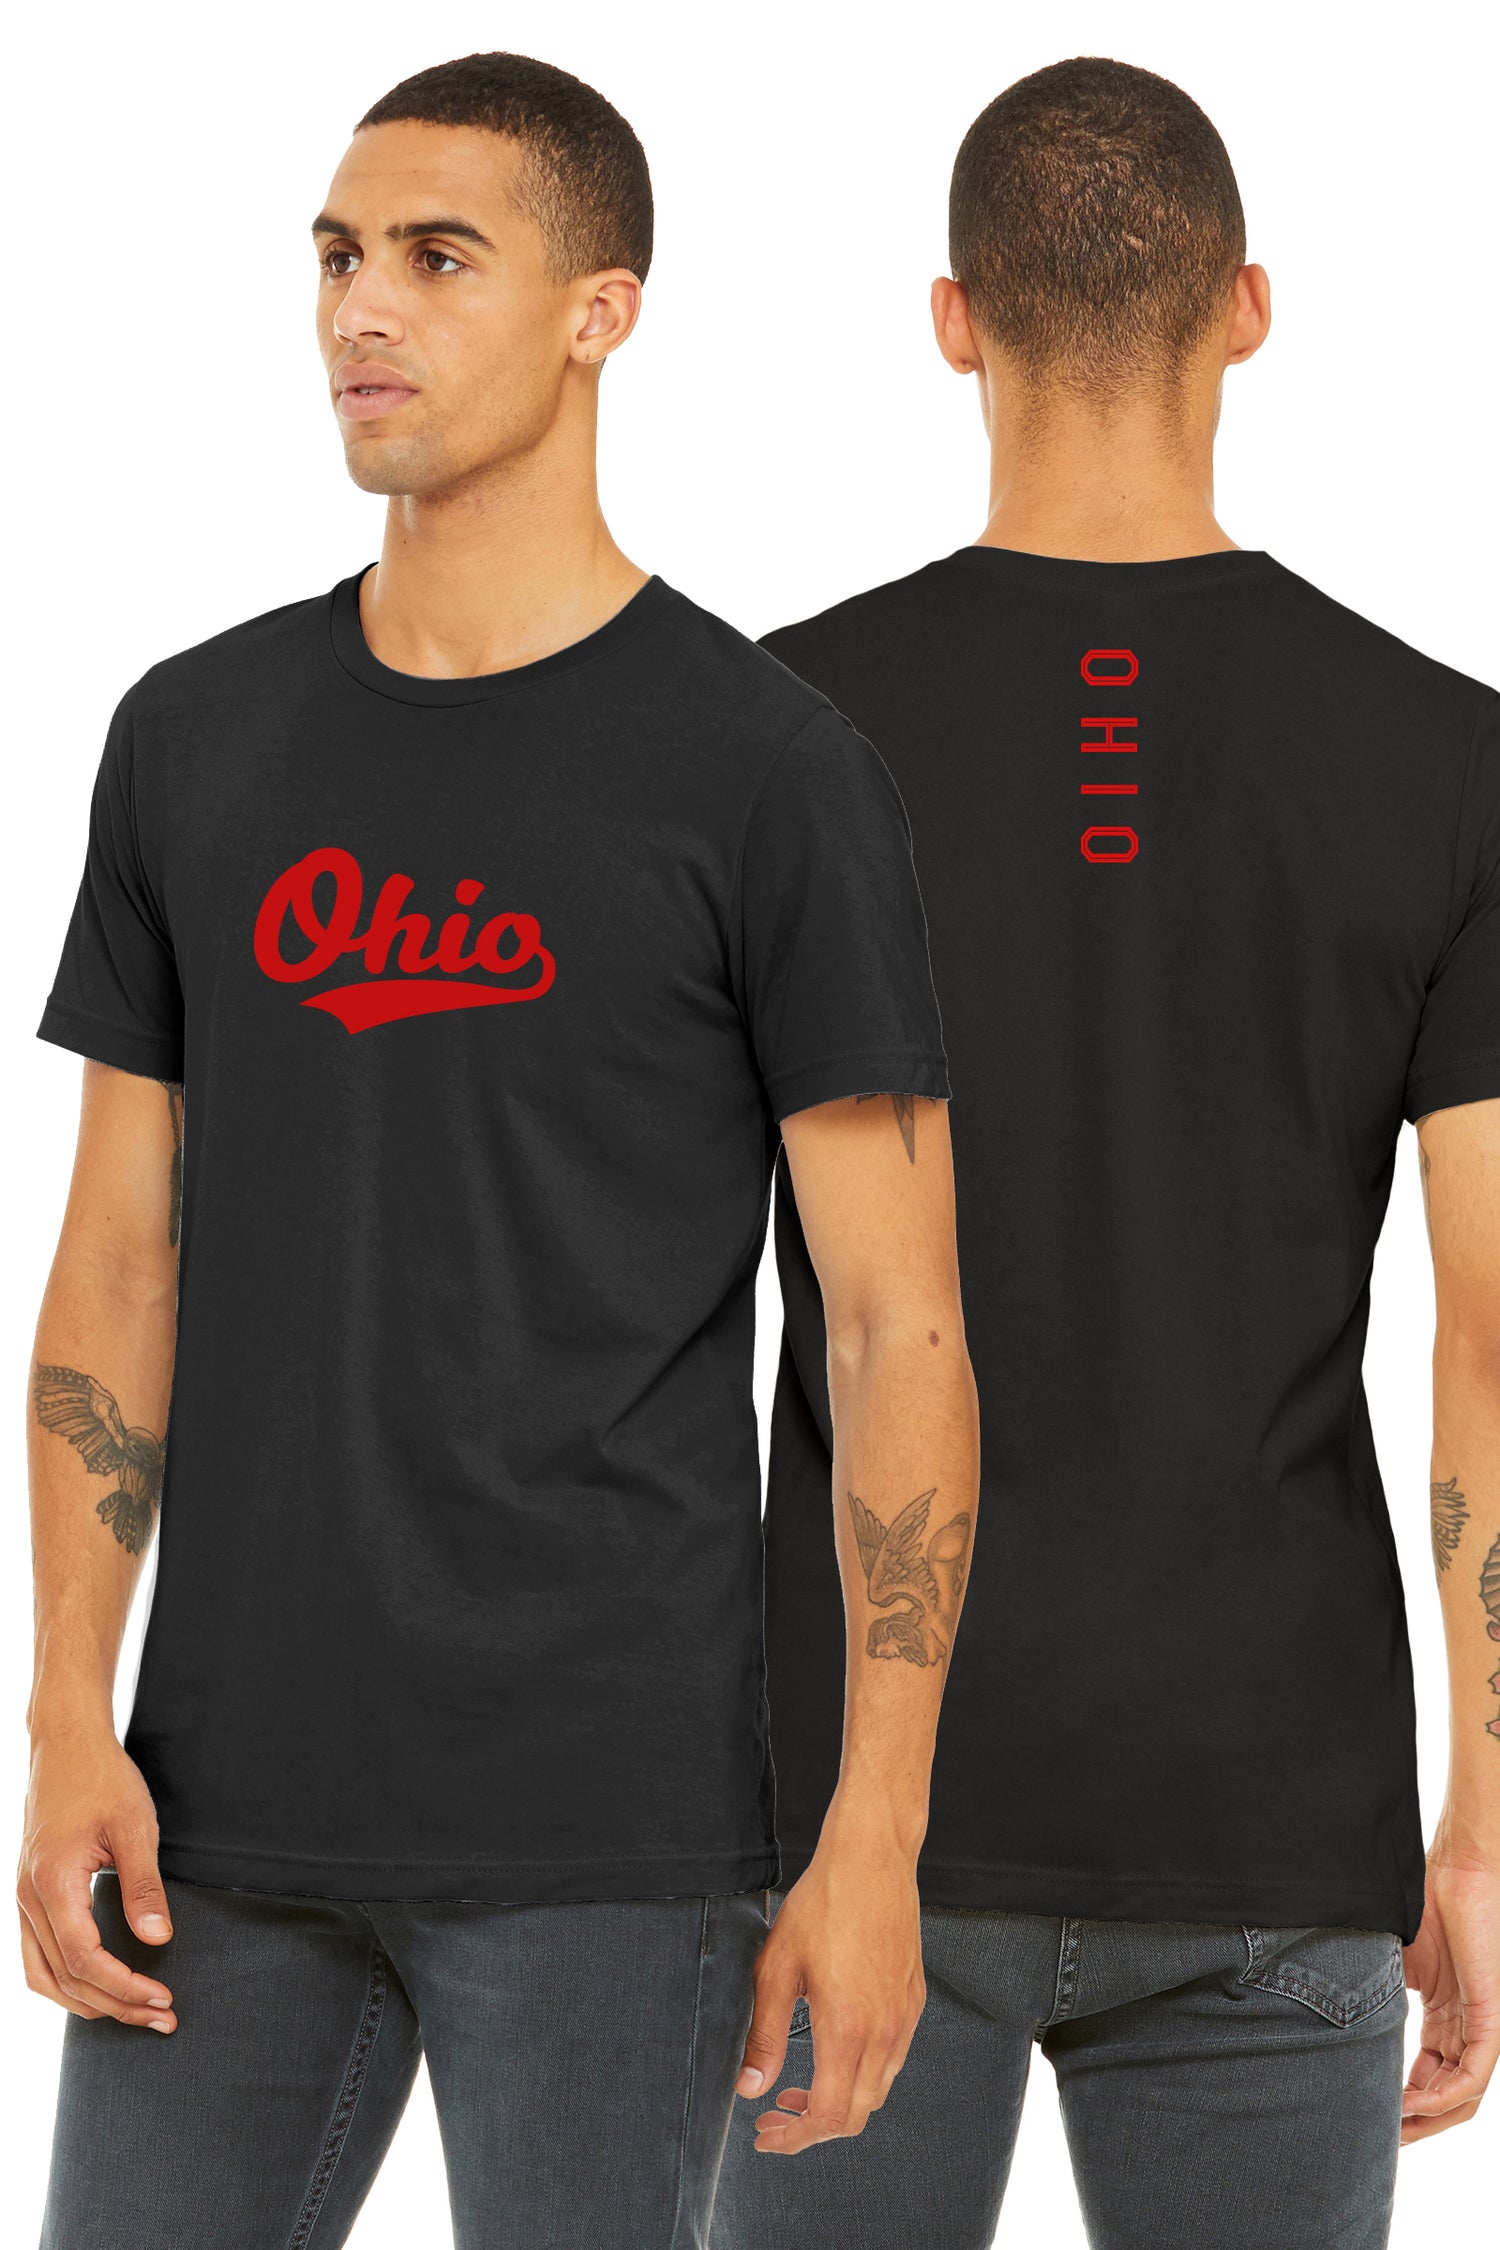 Ohio Clothing